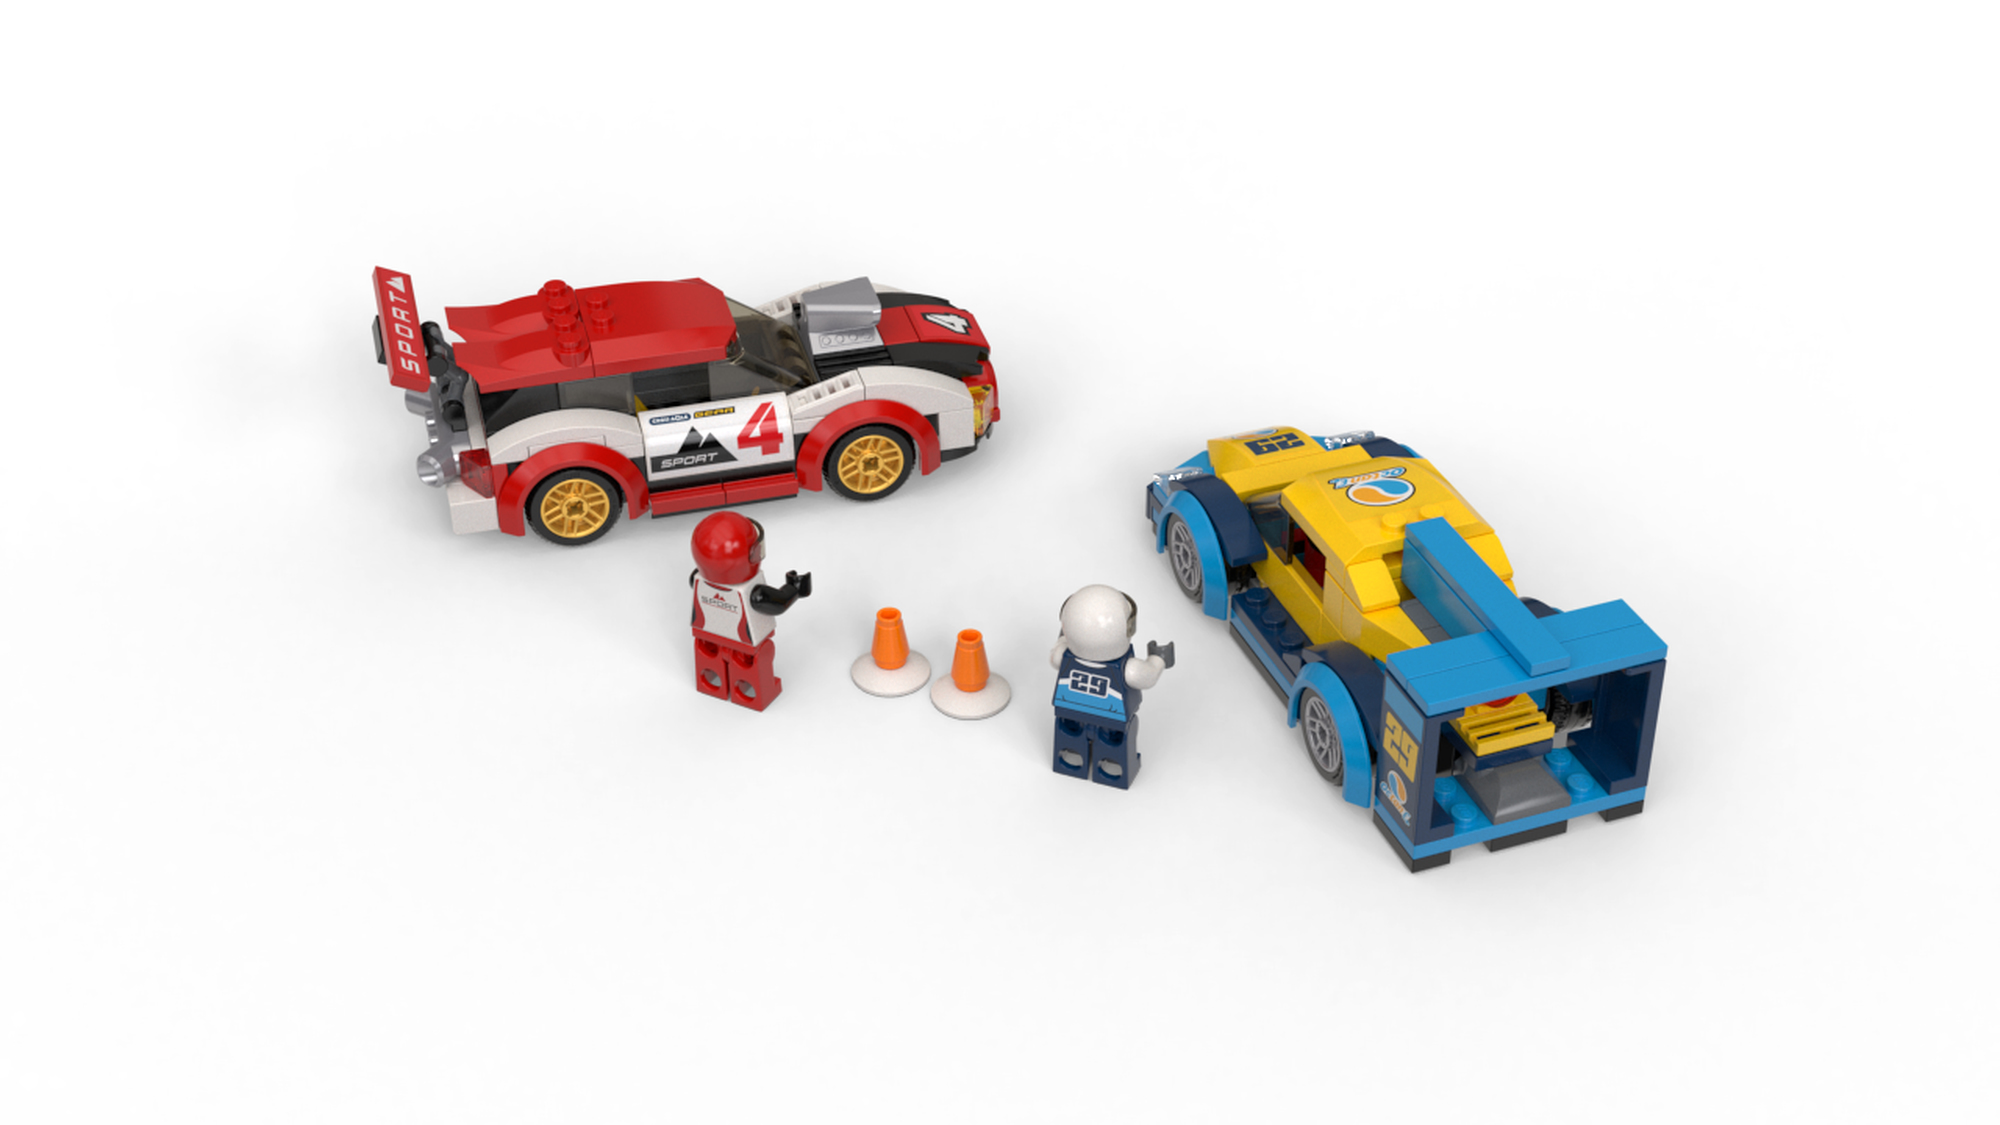 LEGO 60256 Coches de Carreras - LEGO City - BricksDirect Condición